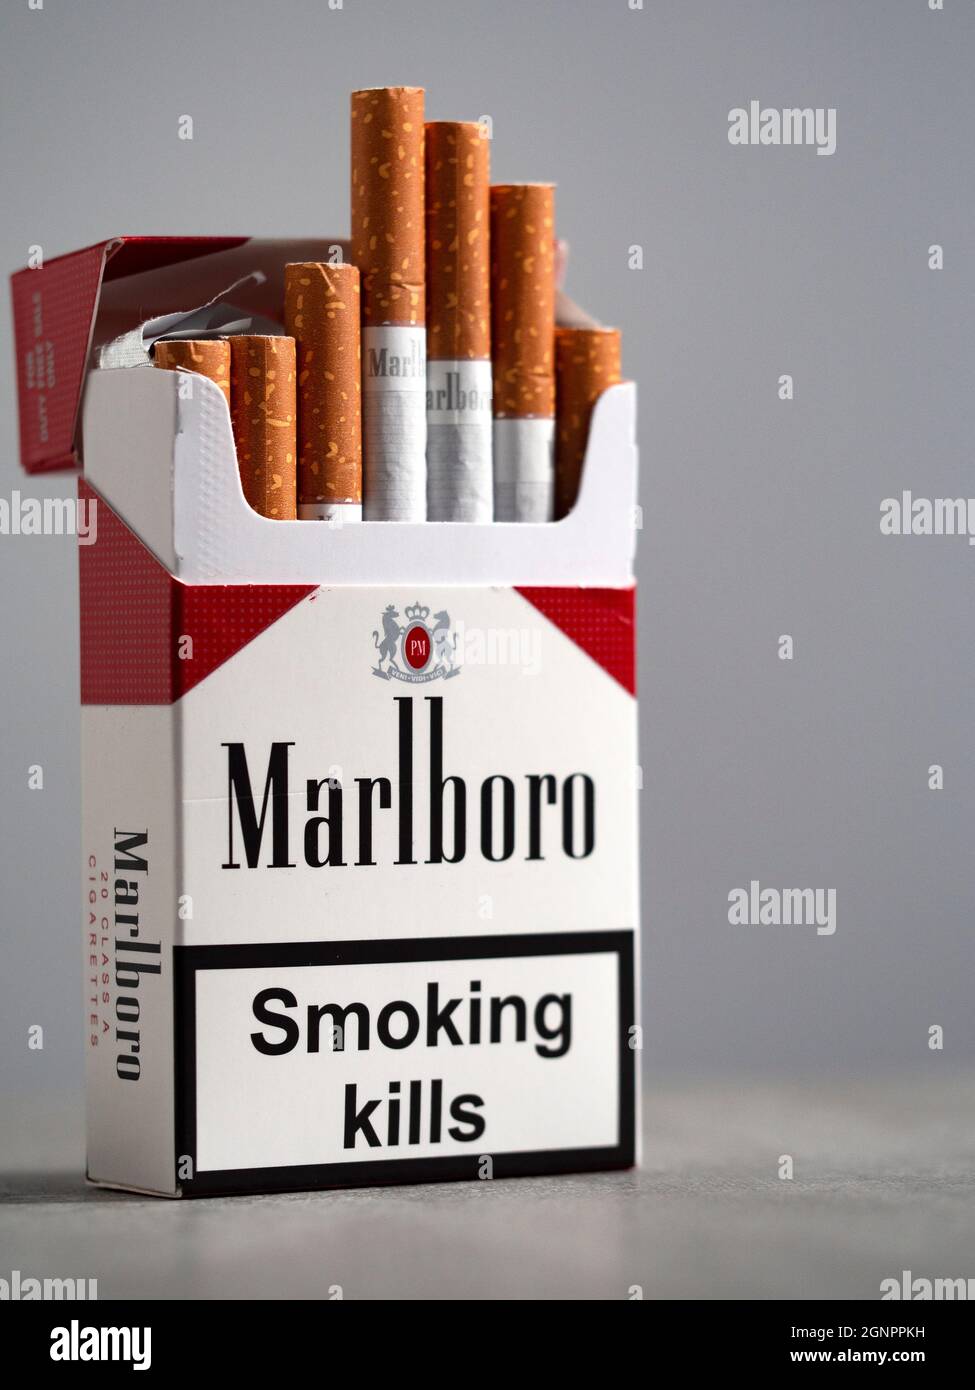 Philip Morris: Die E-Zigarette beendet die Ära des Marlboro-Manns - WELT